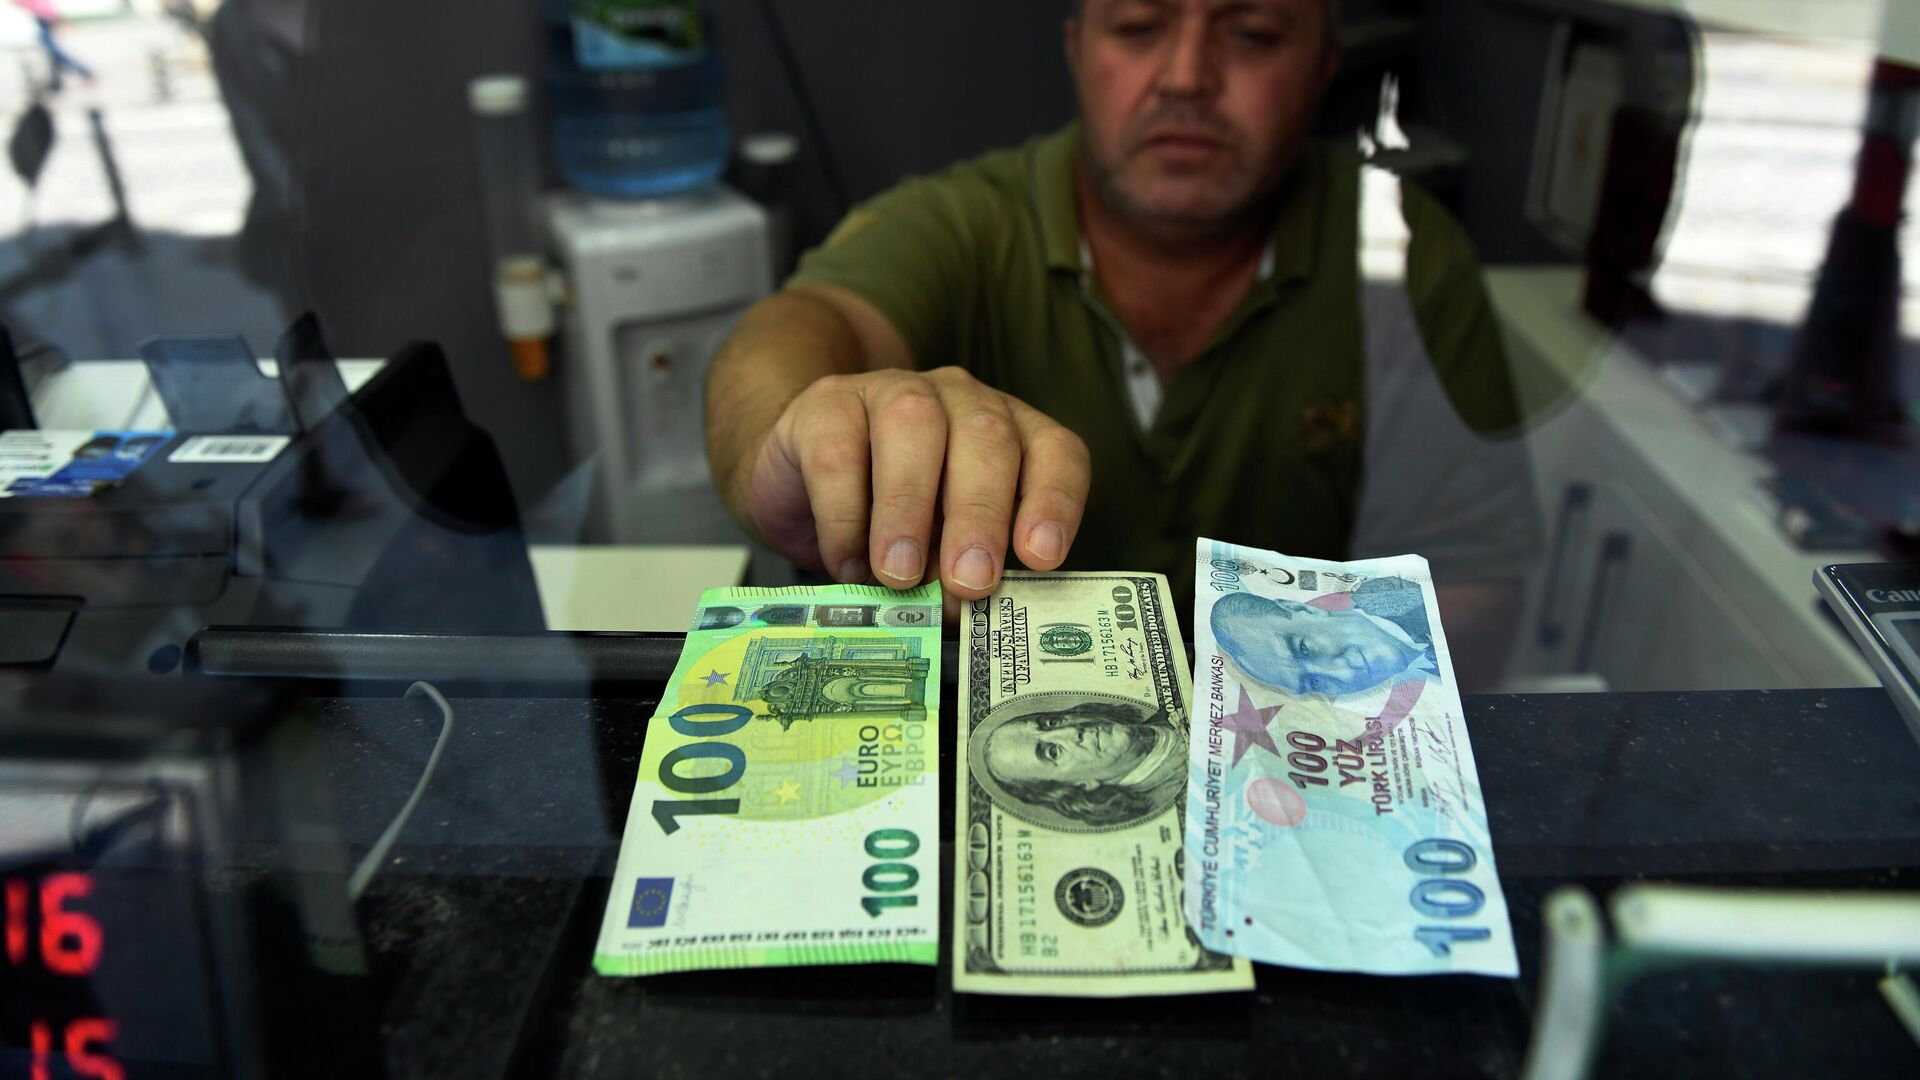 Сотрудник пункта обмена валюты показывает банкноты 100 евро, 100 долларов США и 100 турецких лир, фото из архива - Sputnik Azərbaycan, 1920, 01.12.2021